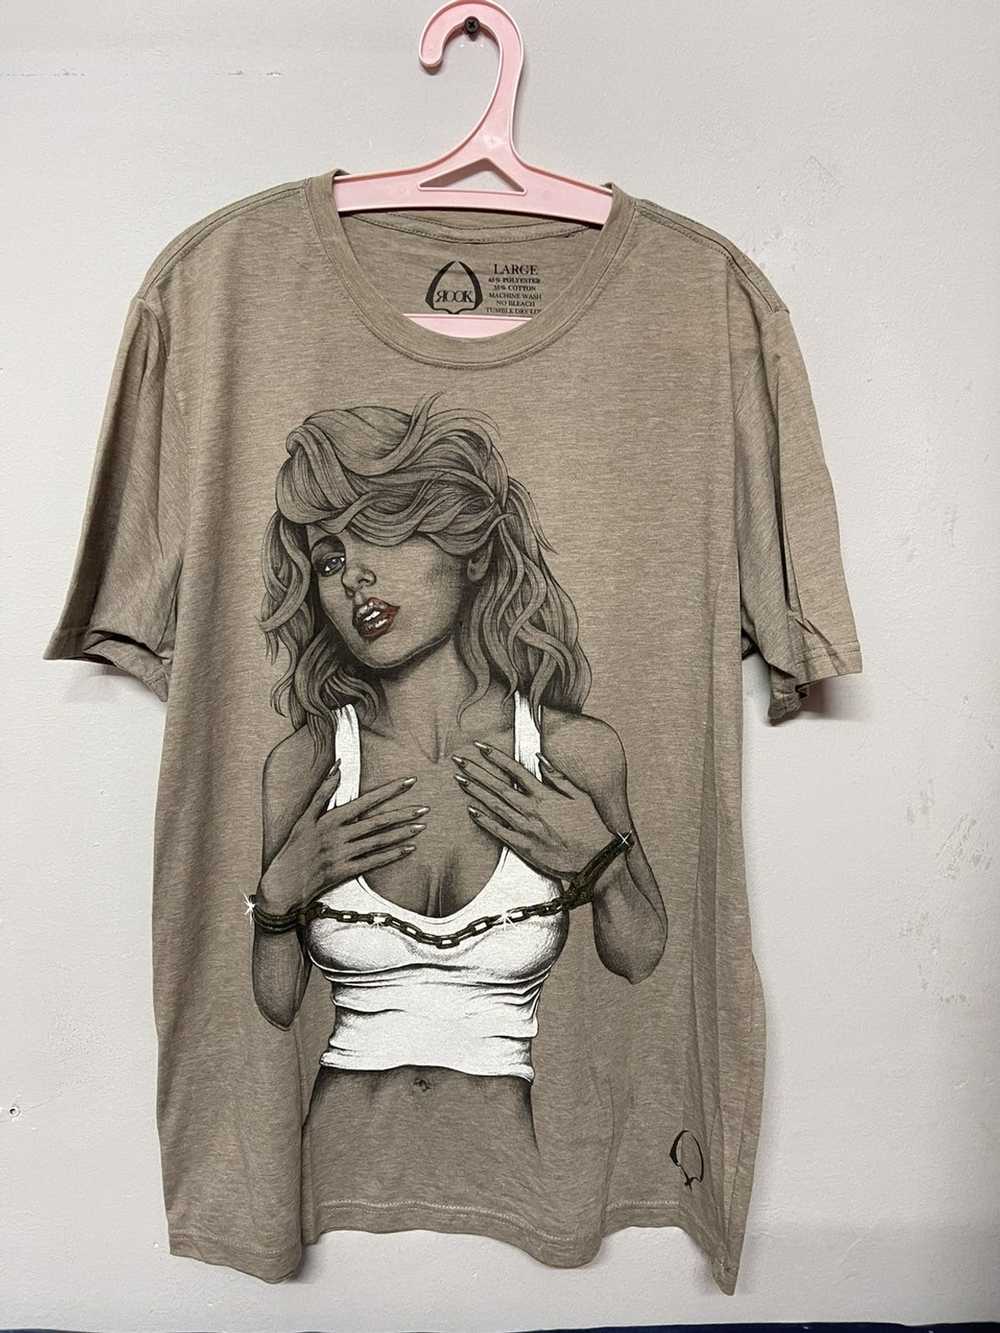 Designer × Streetwear Rook design t shirt - image 1